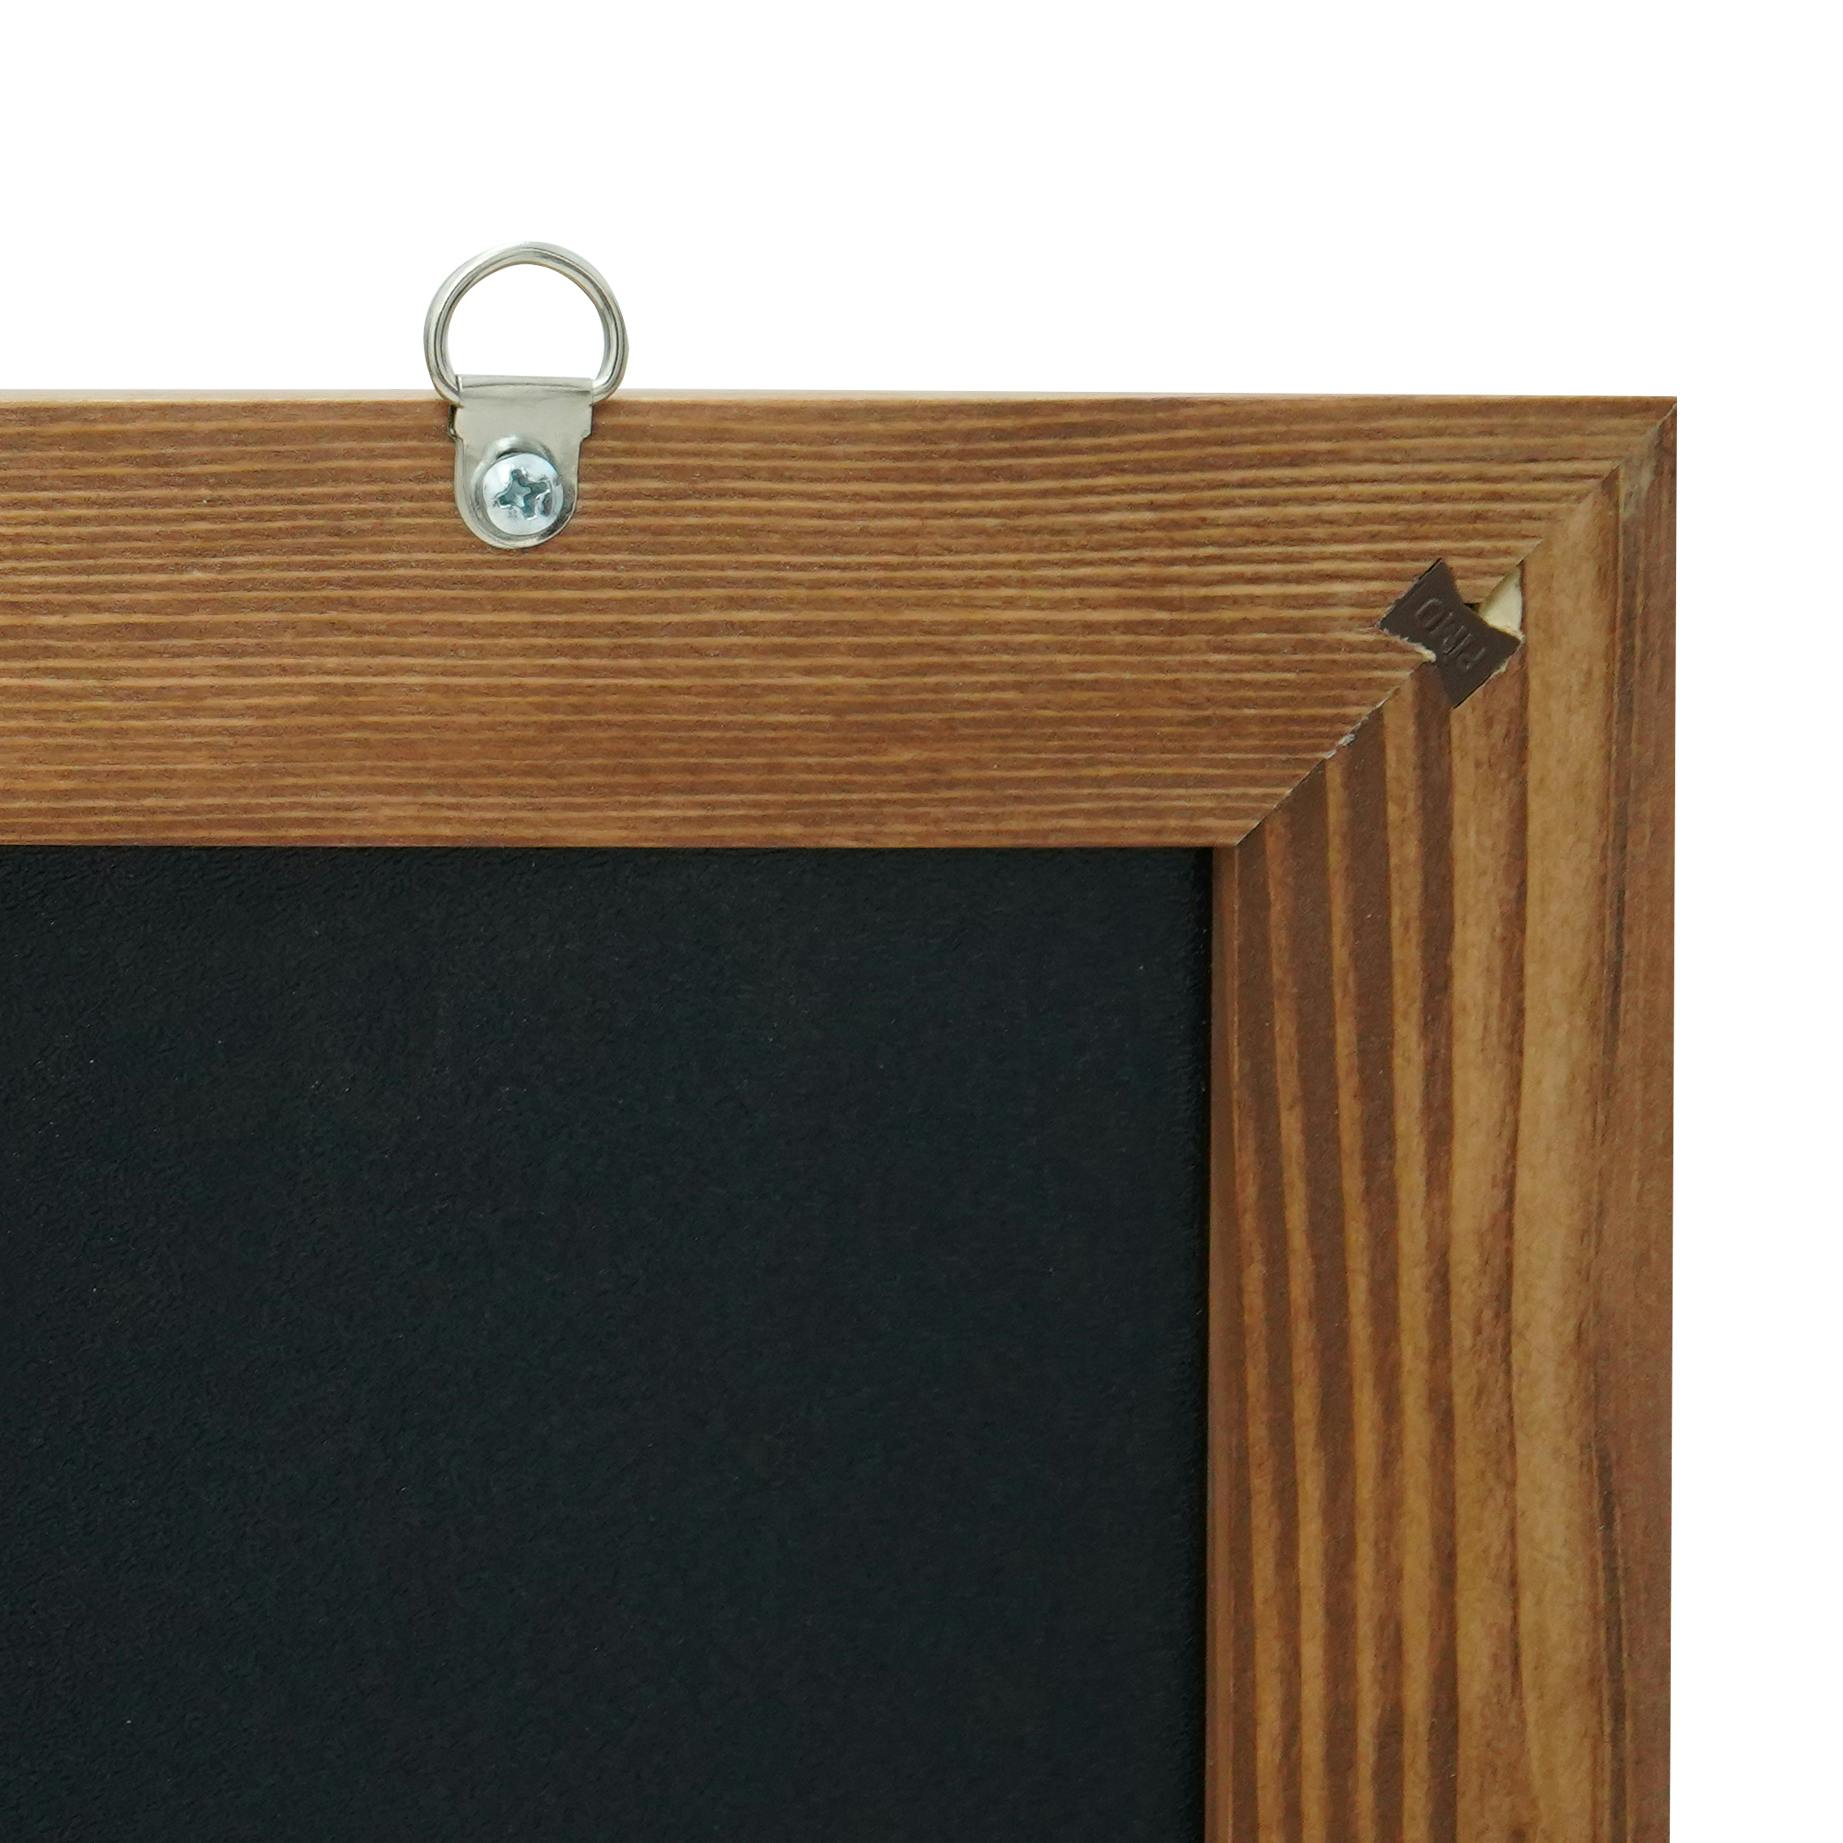 Tableau noir avec cadre en bois - 800 x 600 mm MAUL